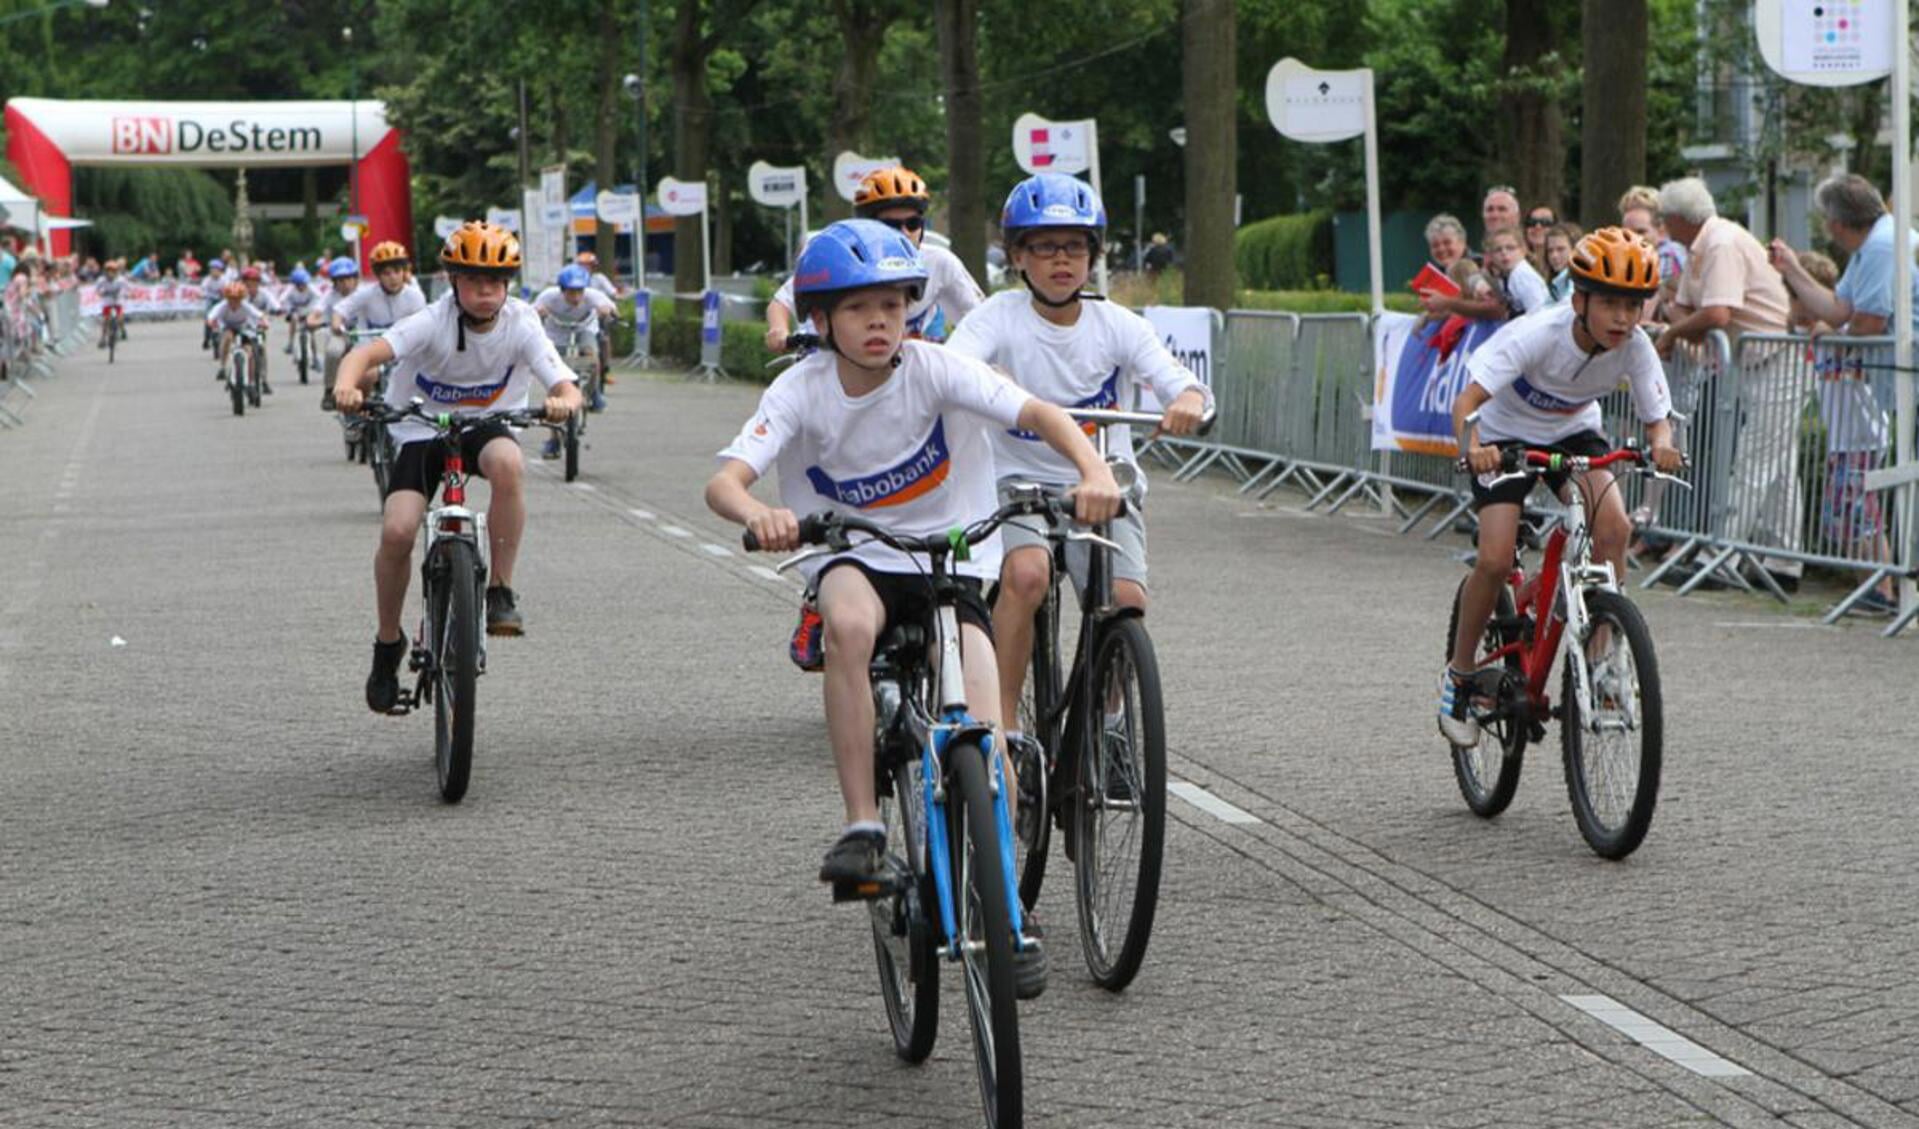 De dikke bandenrace tijdens de Ronde van Prinsenbeek 2012. foto organisatie/Henk Theuns